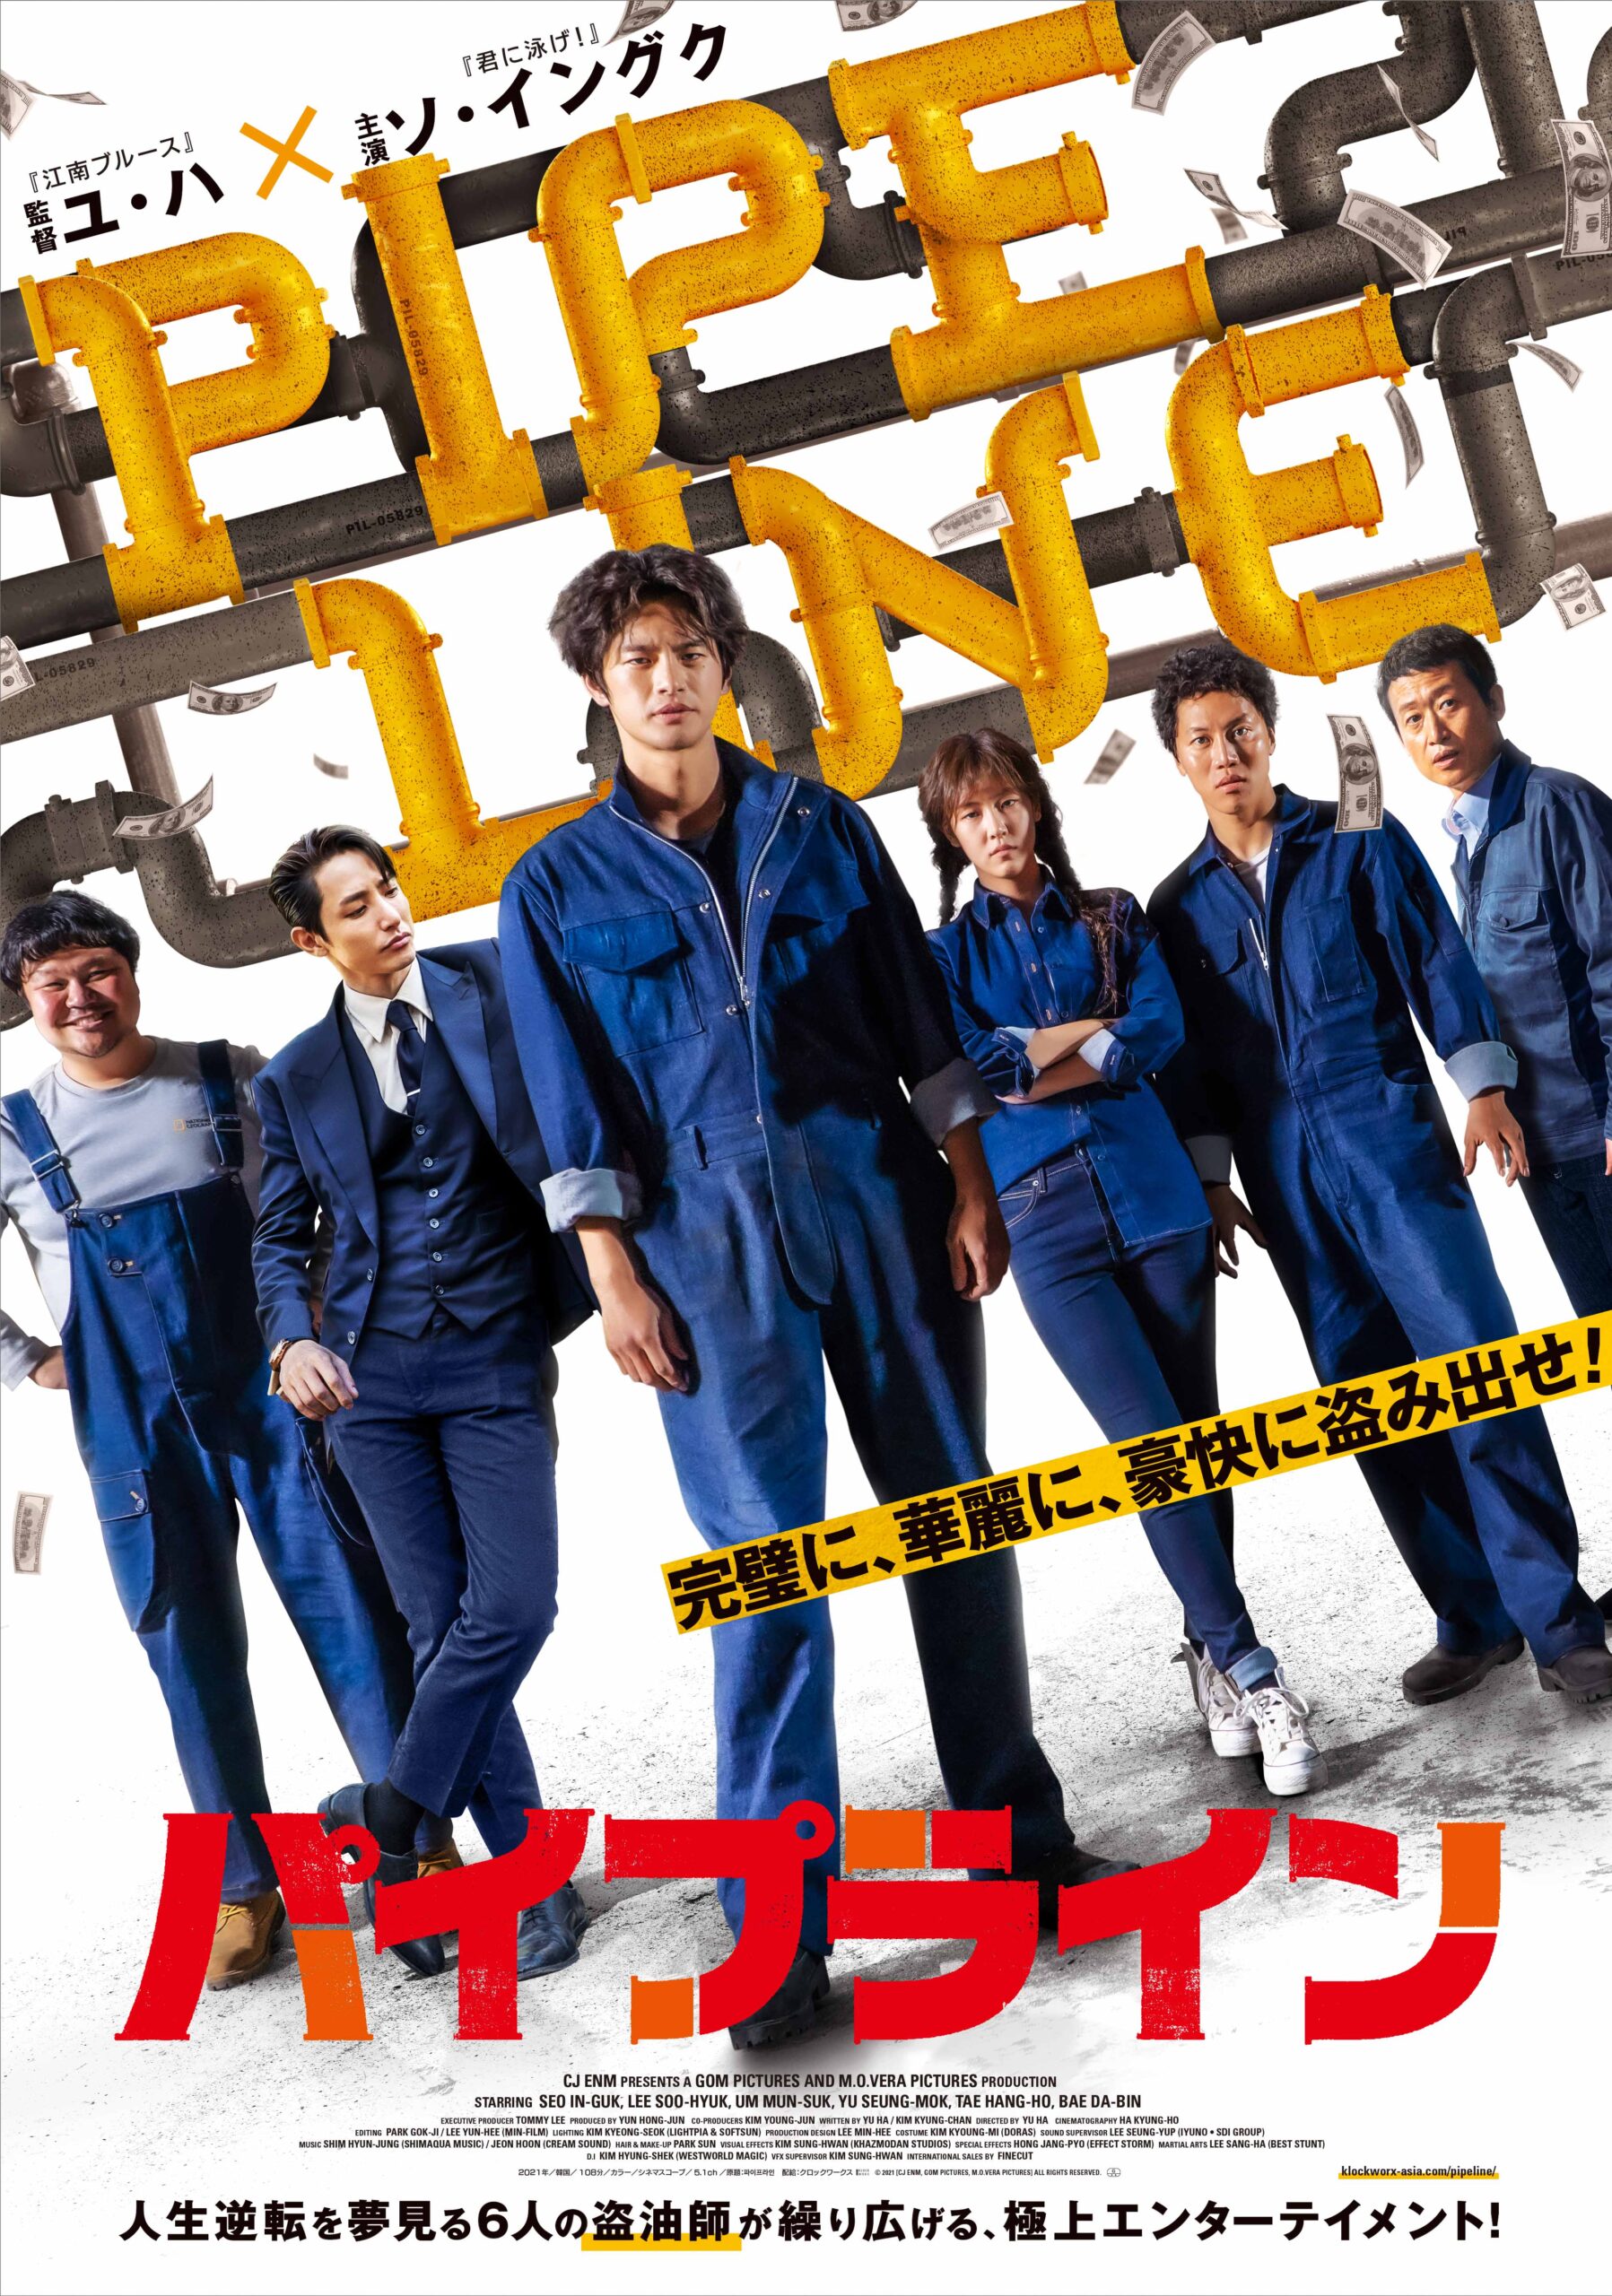 日本初公開の5作品を上映する「第7回大阪韓国映画祭」が11月26日より公開　『イカゲーム』監督の『天命の城』特別上映会も　